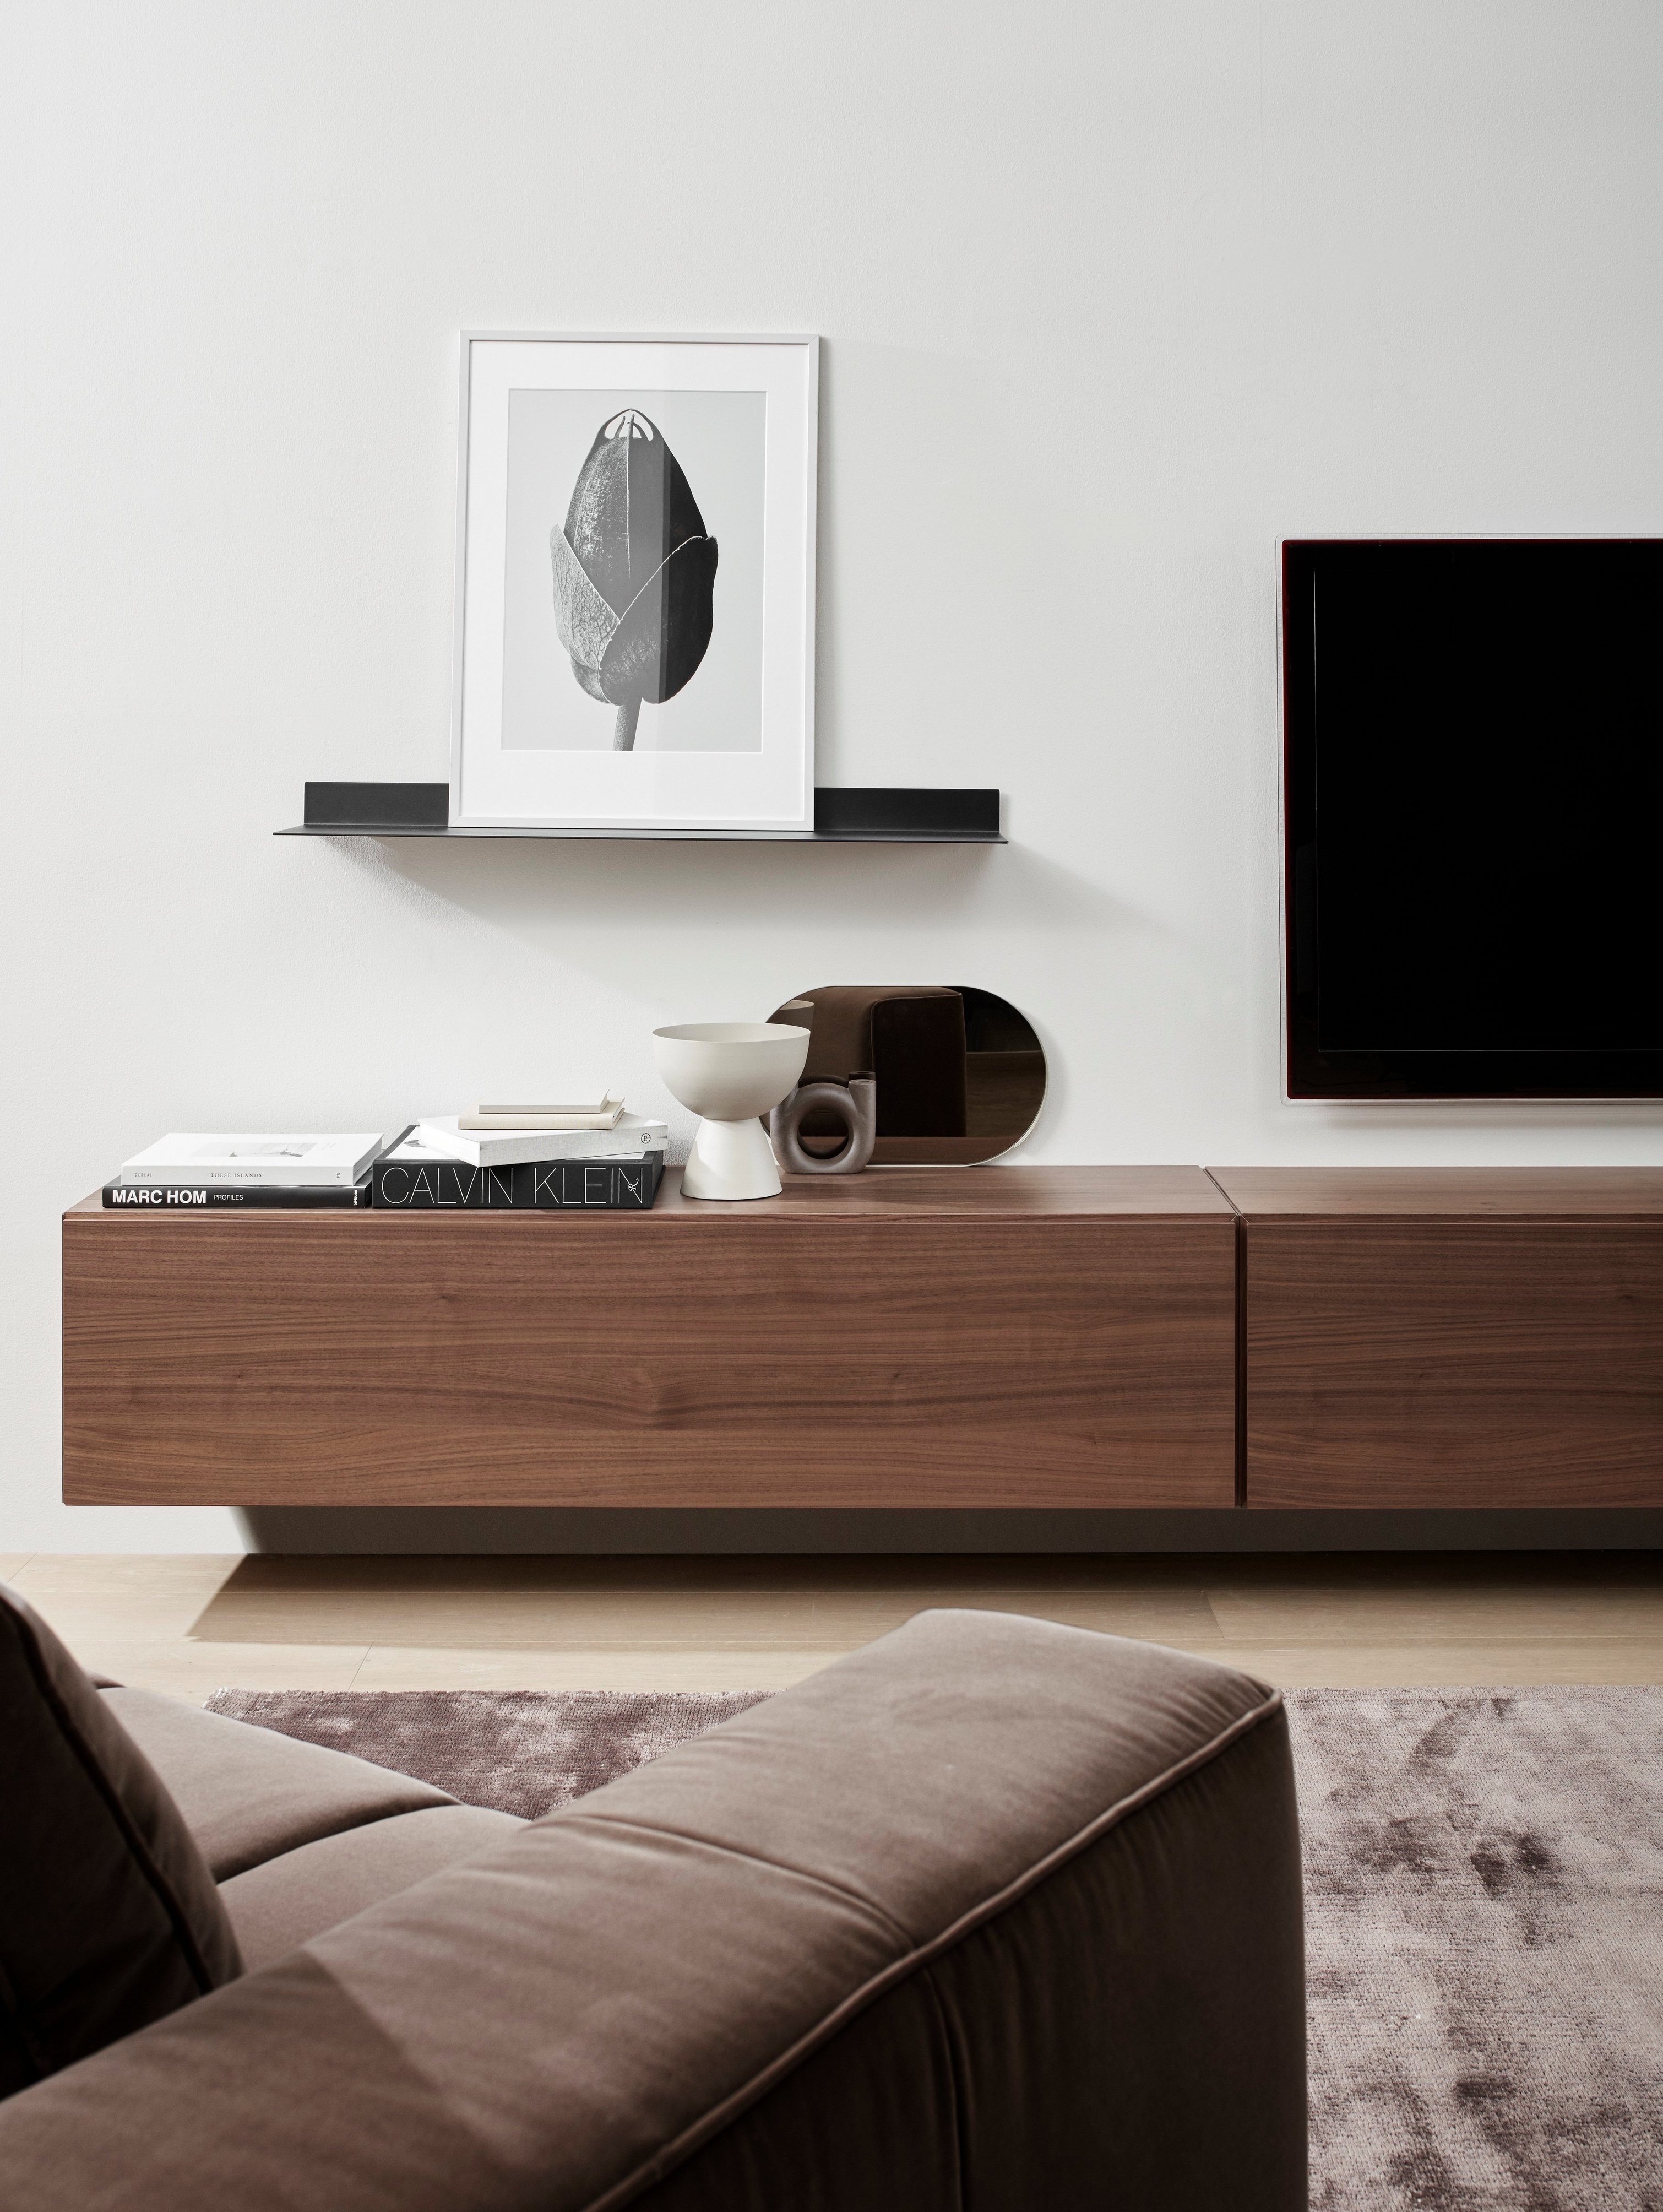 Минималистичная гостиная с коричневым диваном, деревянной мебелью для мультимедиа, абстрактным произведением искусства и современным декором.